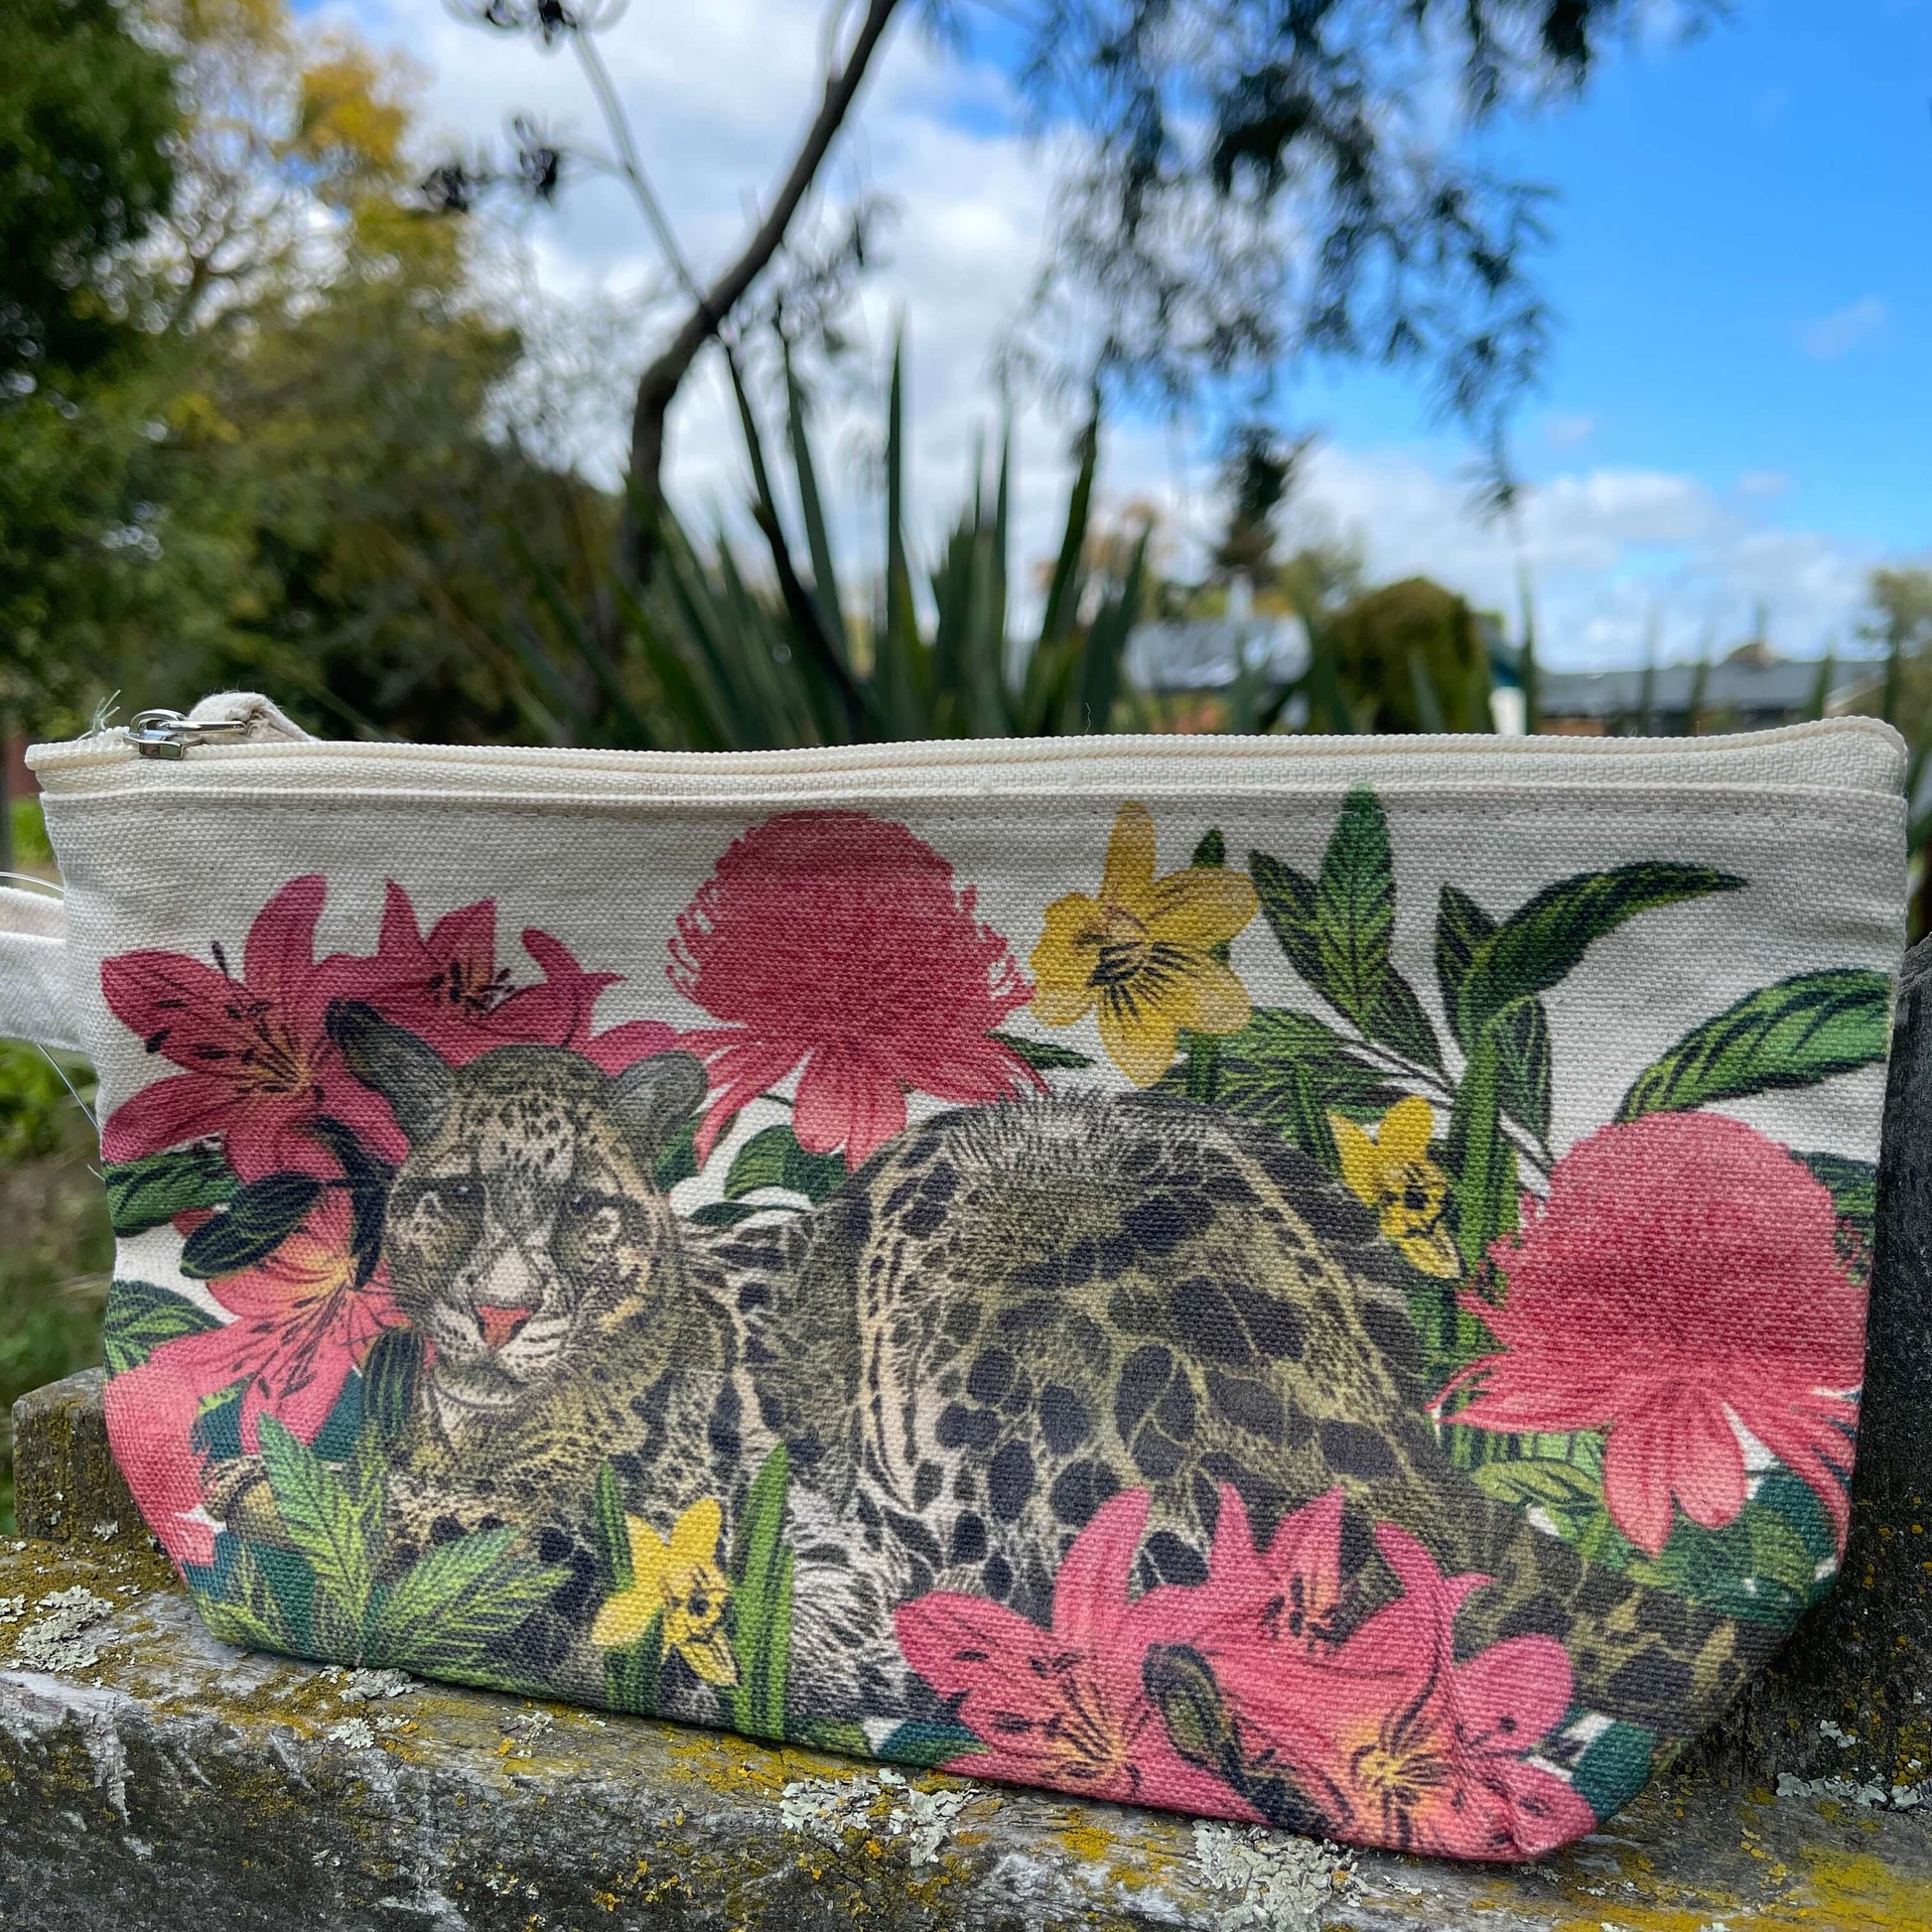 Vibrant Leopard print on a cotton clutch purse.